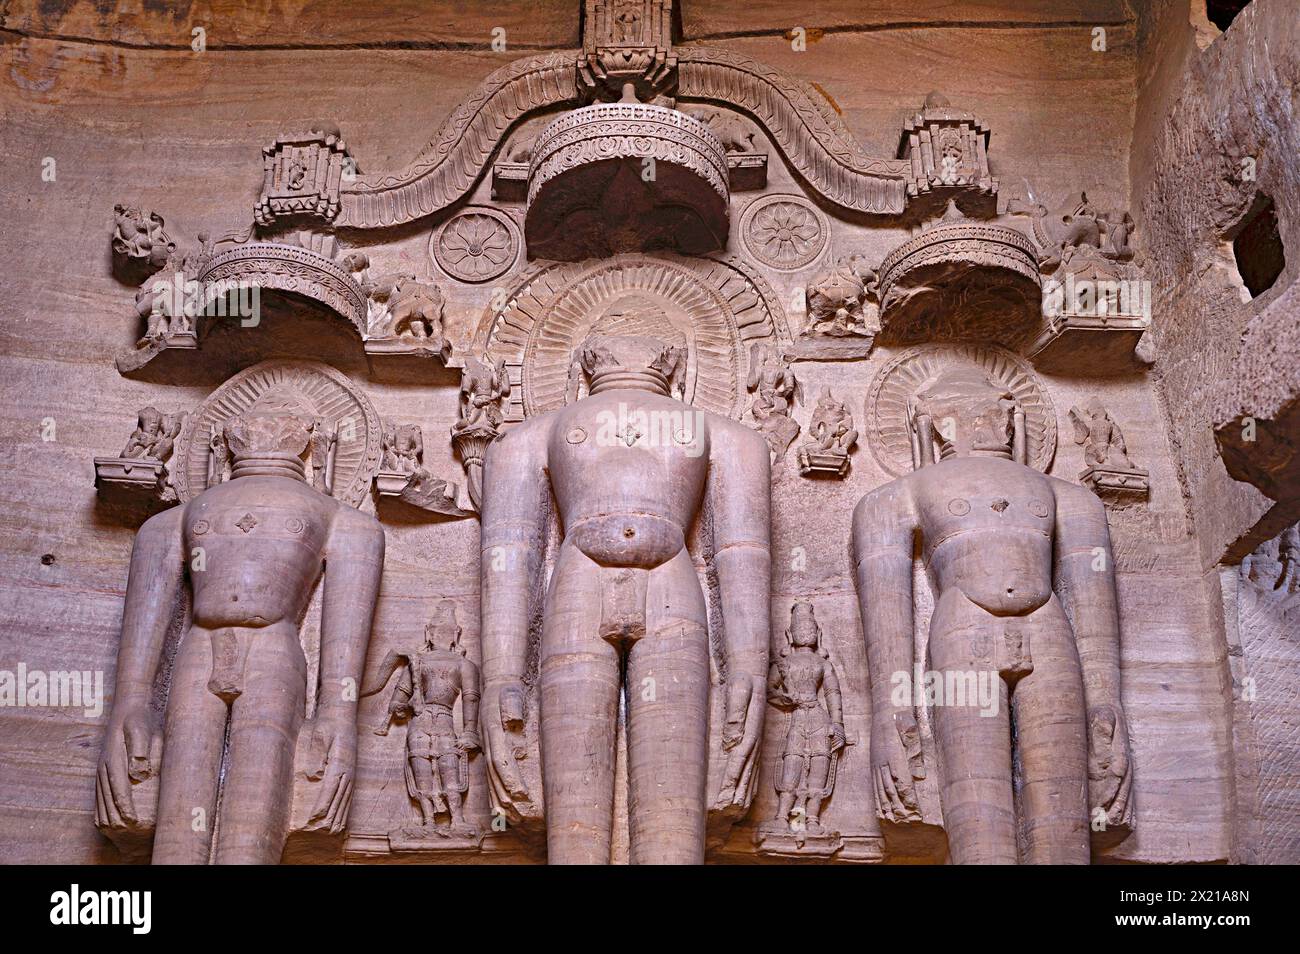 Sculture giainiste scolpite sulla roccia, popolarmente conosciute come Rock - Cut Jain Colossal o Gopachal Parvat, Gwalior, Madhya Pradesh, India Foto Stock